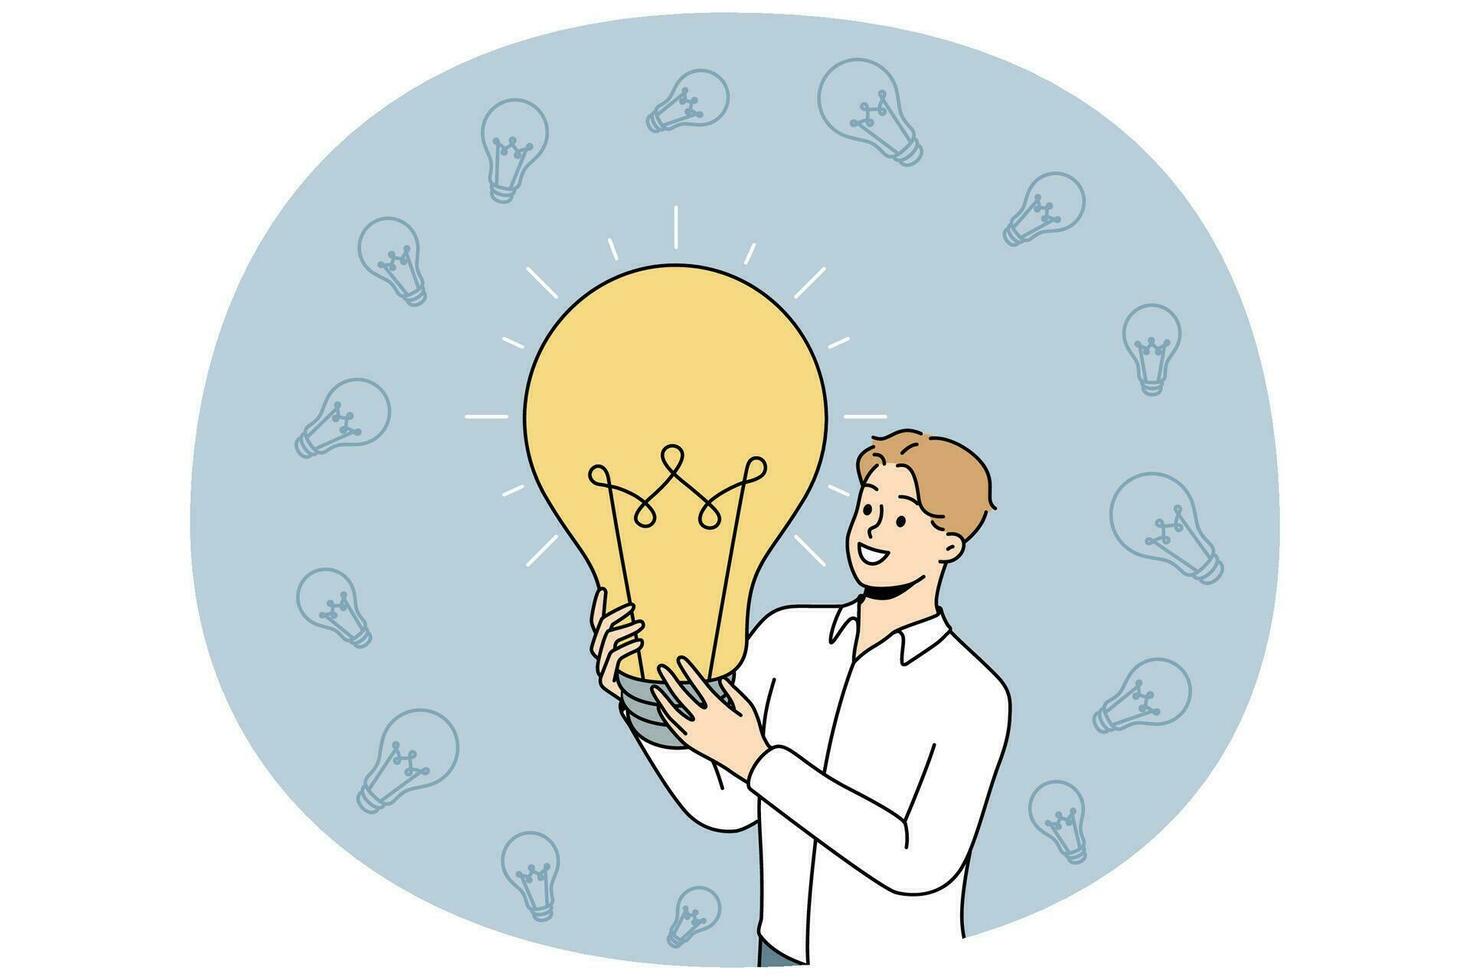 pessoa segurando a lâmpada gera uma ideia de negócio criativa. empresário com brainstorm de lâmpada resolver problema. solução e inovação. ilustração vetorial. vetor